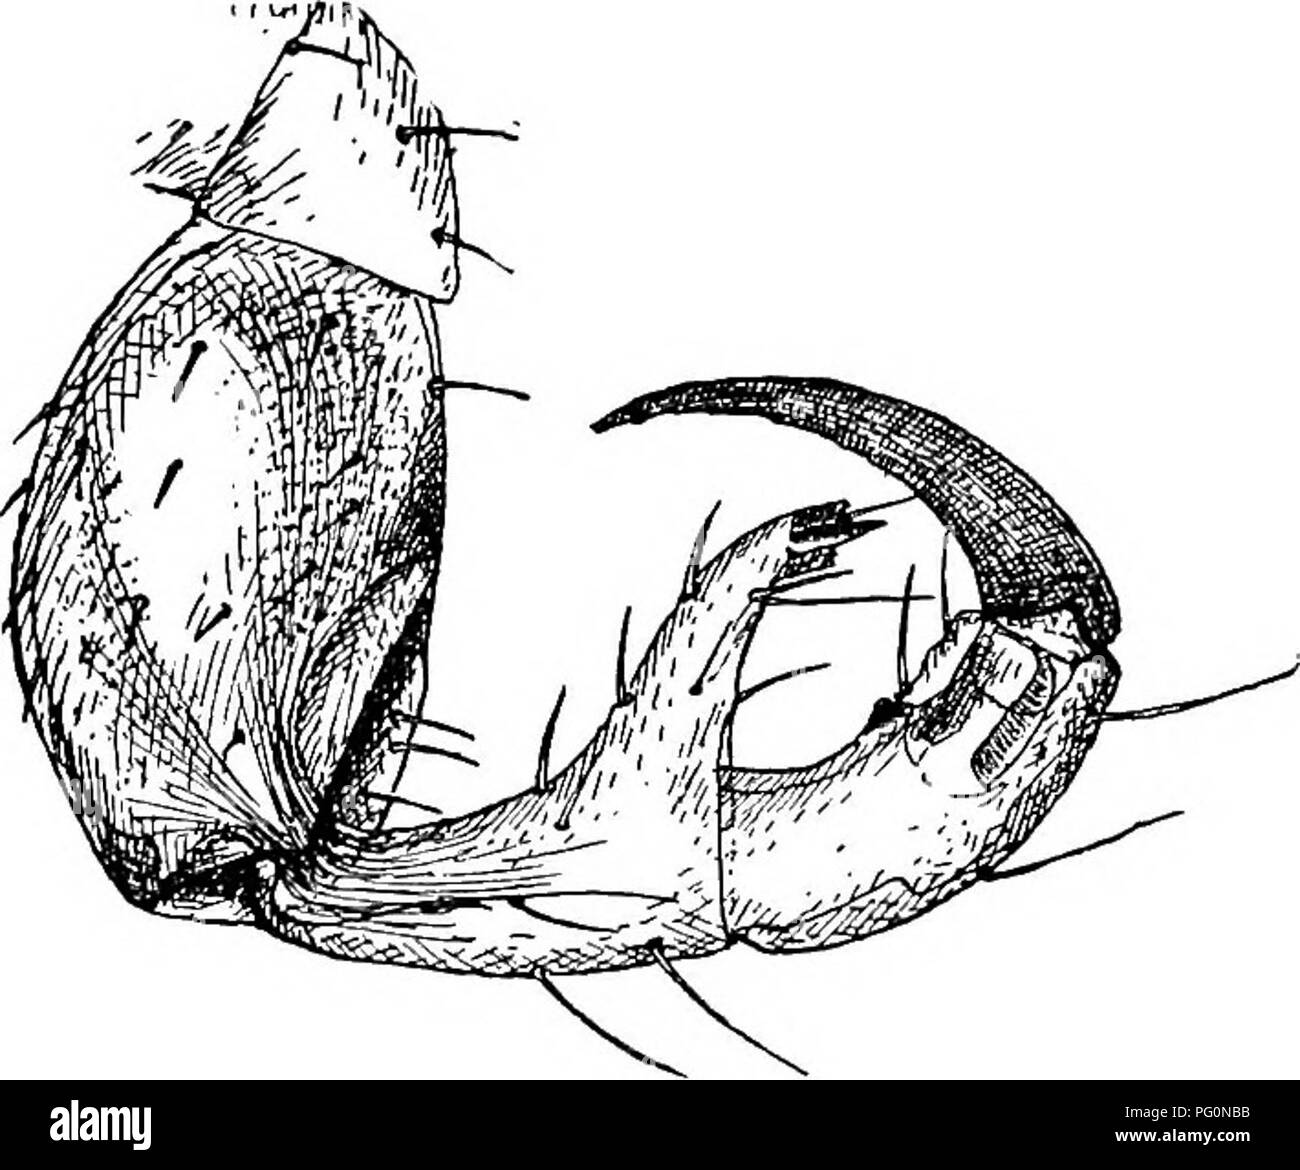 . Des parasites animaux et la maladie humaine. Parasitologie médicale ; insectes en tant que porteurs de la maladie. Pou 389 corps. espèces, qui se referme comme un doigt contre une thumbhke pro- jet du segment suivant de la jambe (Fig. 173). Il n'y a même pas de rudiments d'ailes. Le corps d'un pou est clairement divisé en tête, thorax et abdomen (Fig. 174). Le thorax est toujours plus large que la tête, une caractéristique qui distingue en bref un vrai pou principal de l'oiseau à tête large (Fig. 172). L'abdomen est divisé en segments, six à huit d'entre eux dans le domaine des espèces ; le terminal 1 est en Banque D'Images